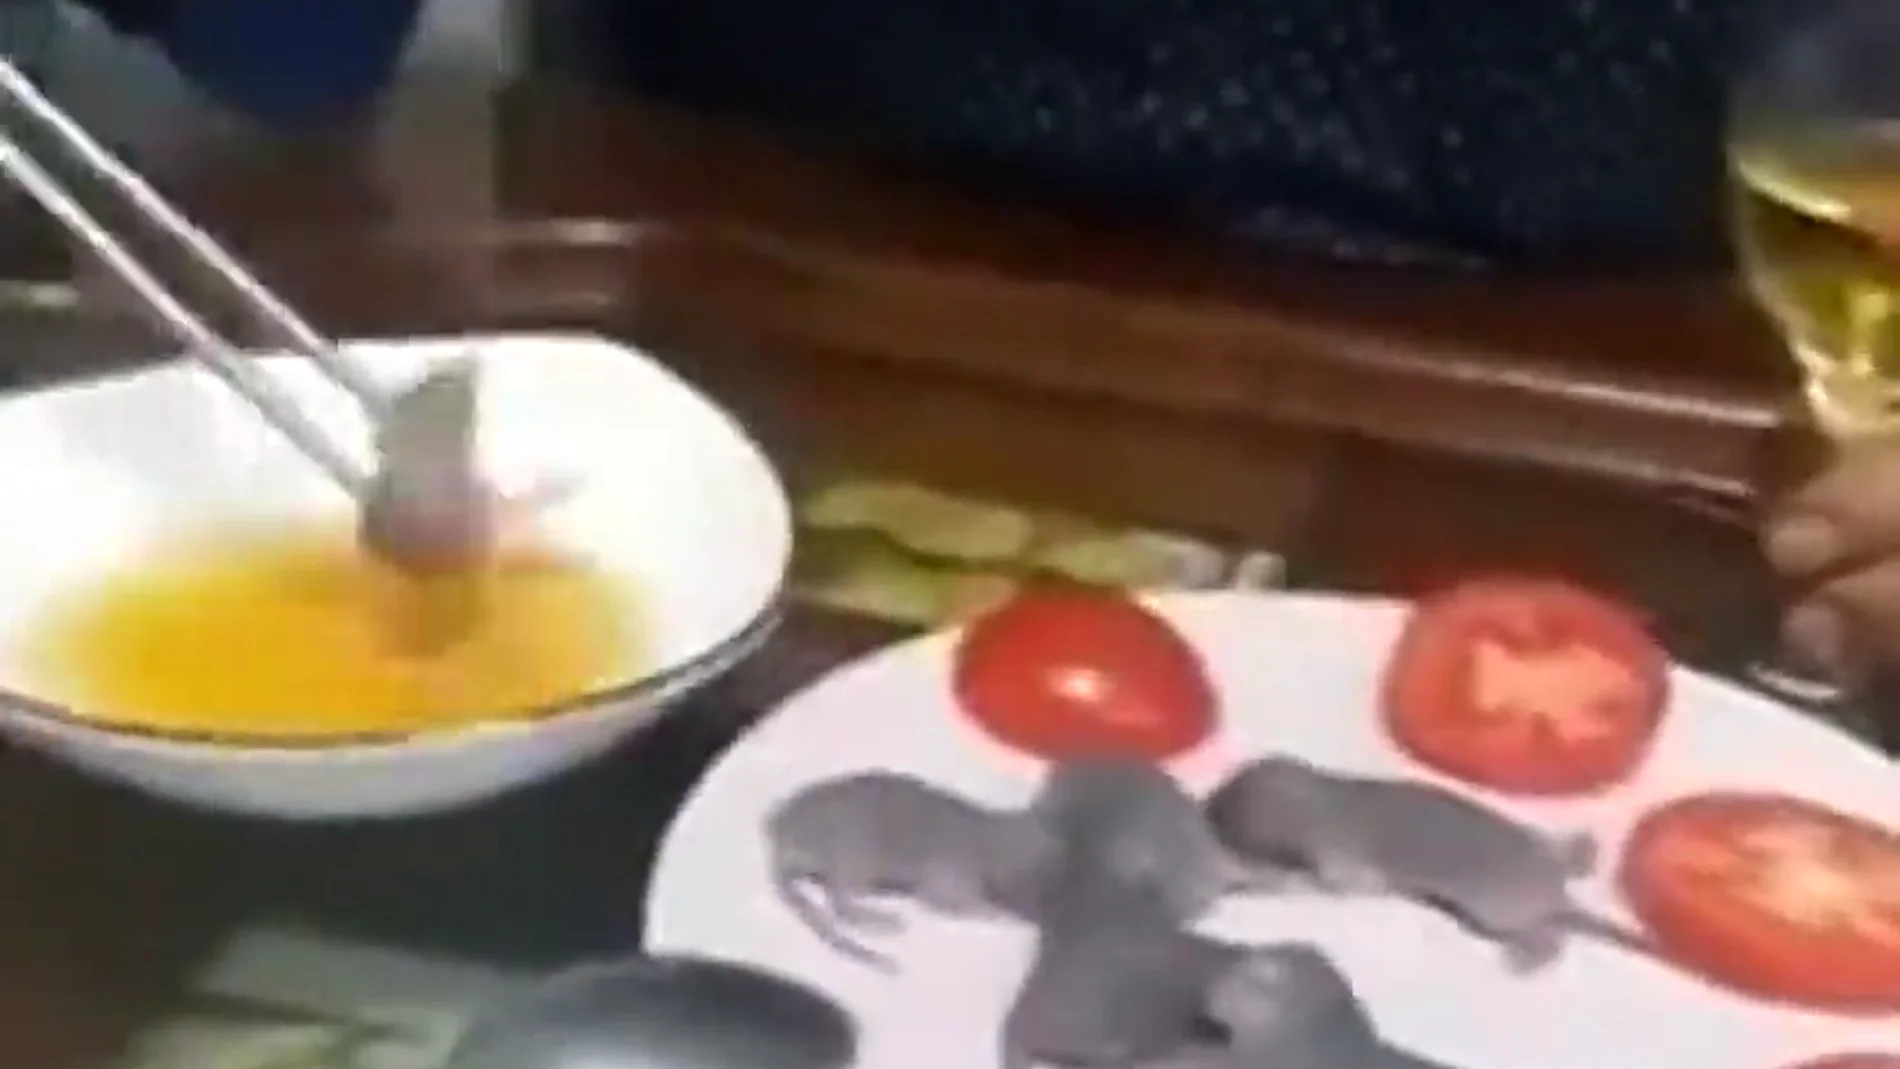 El viral (y asqueroso) momento en el que un hombre moja un ratón vivo en una salsa antes de comérselo